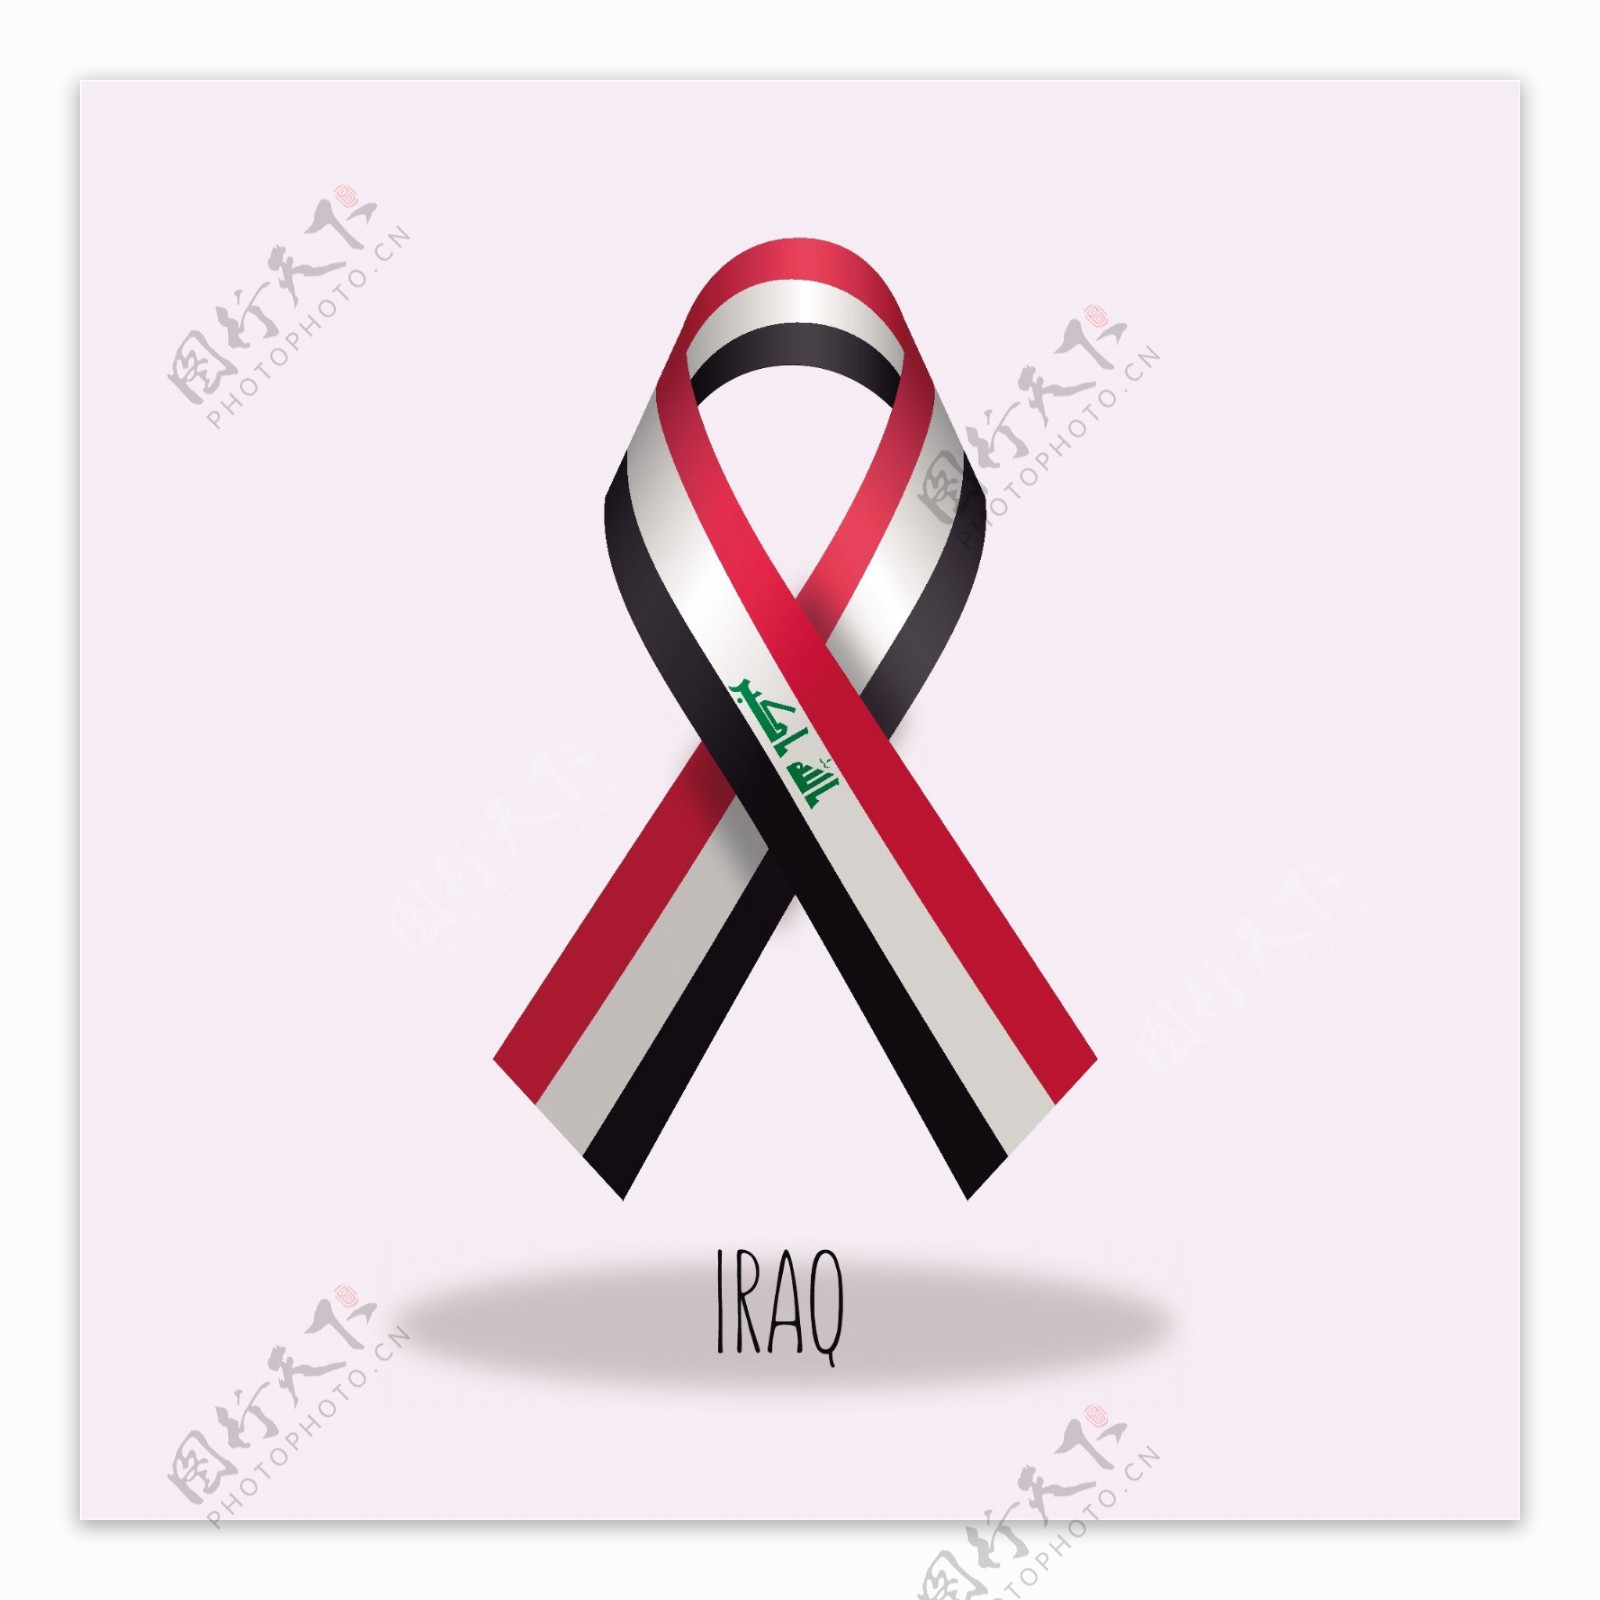 伊拉克国旗丝带设计